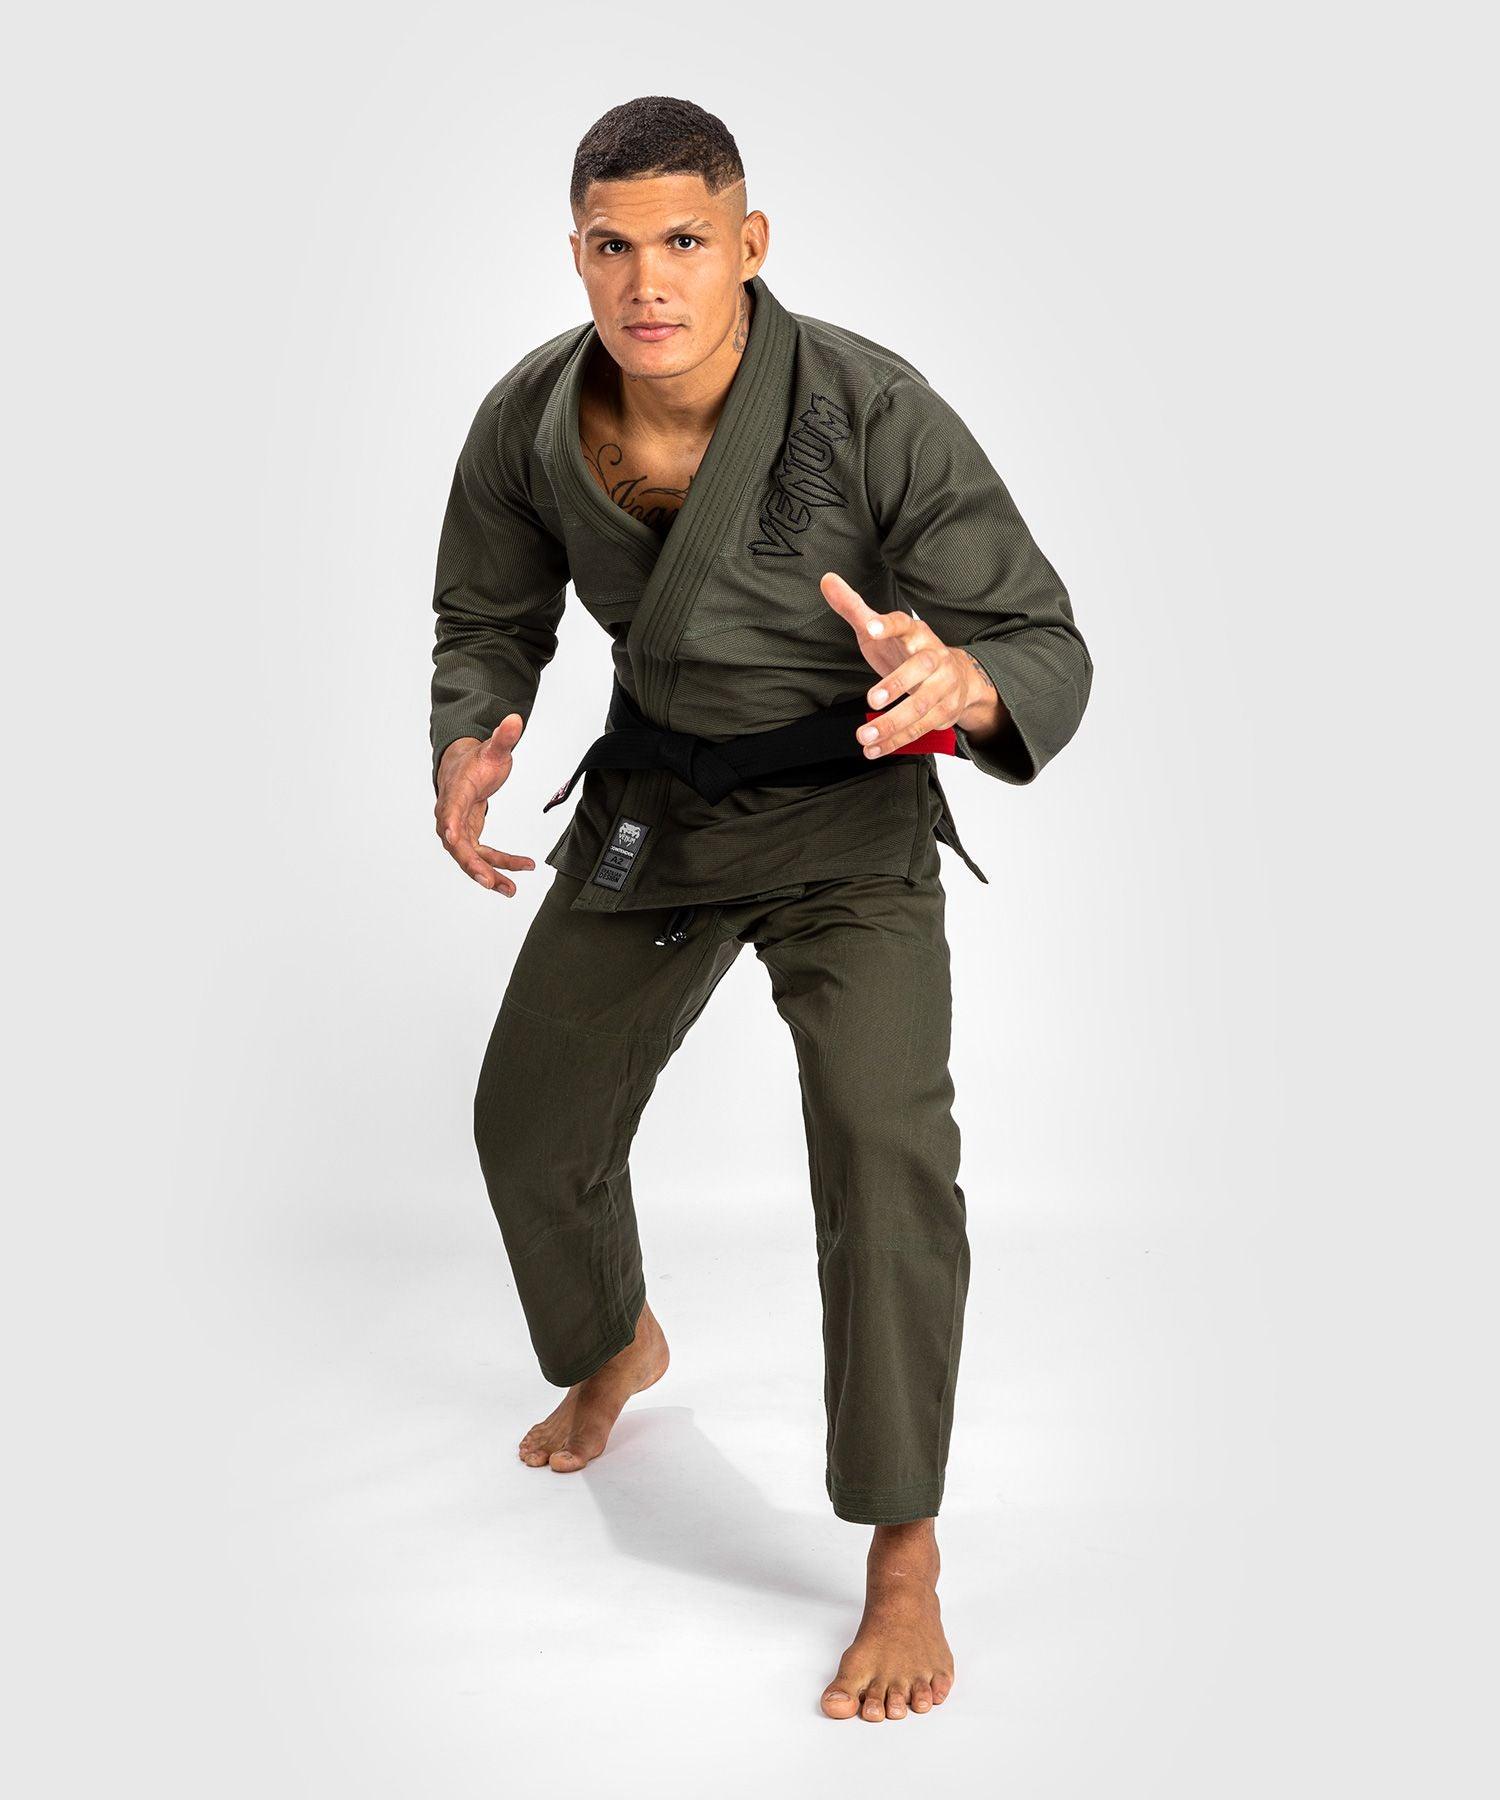 Kimono Jiu Jitsu Brésilien Venum Contender 2.0 - Kaki - Boutique des Arts Martiaux et Sports de Combat